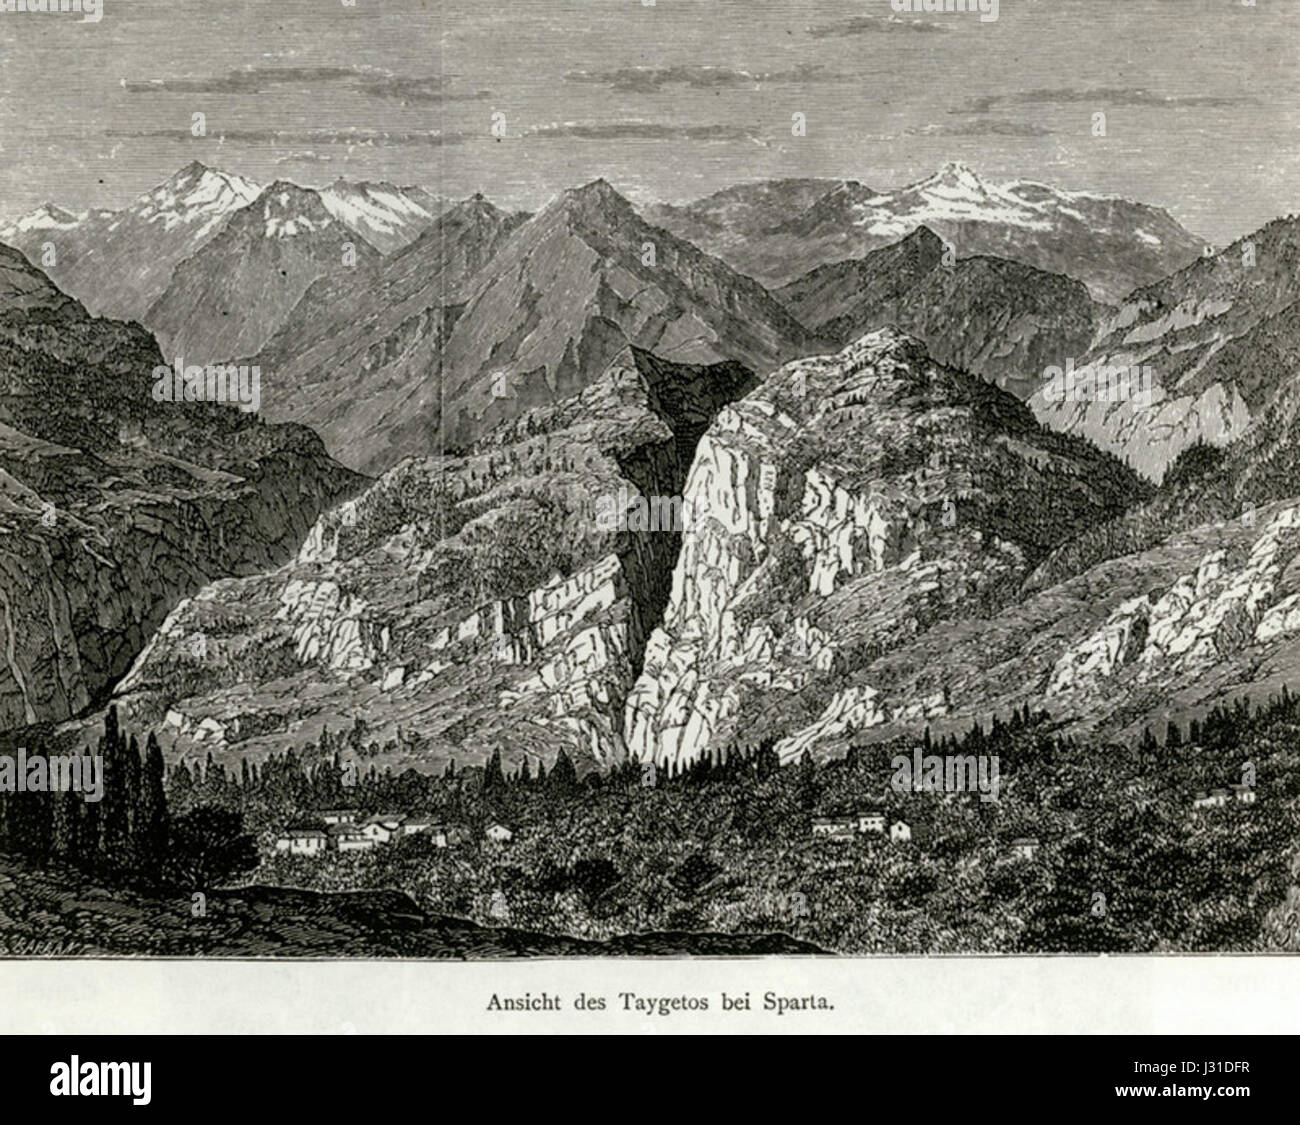 Ansicht des Taigetos bei Sparta - Schweiger Lerchenfeld Amand (Freiherr von) - 1887 Foto Stock